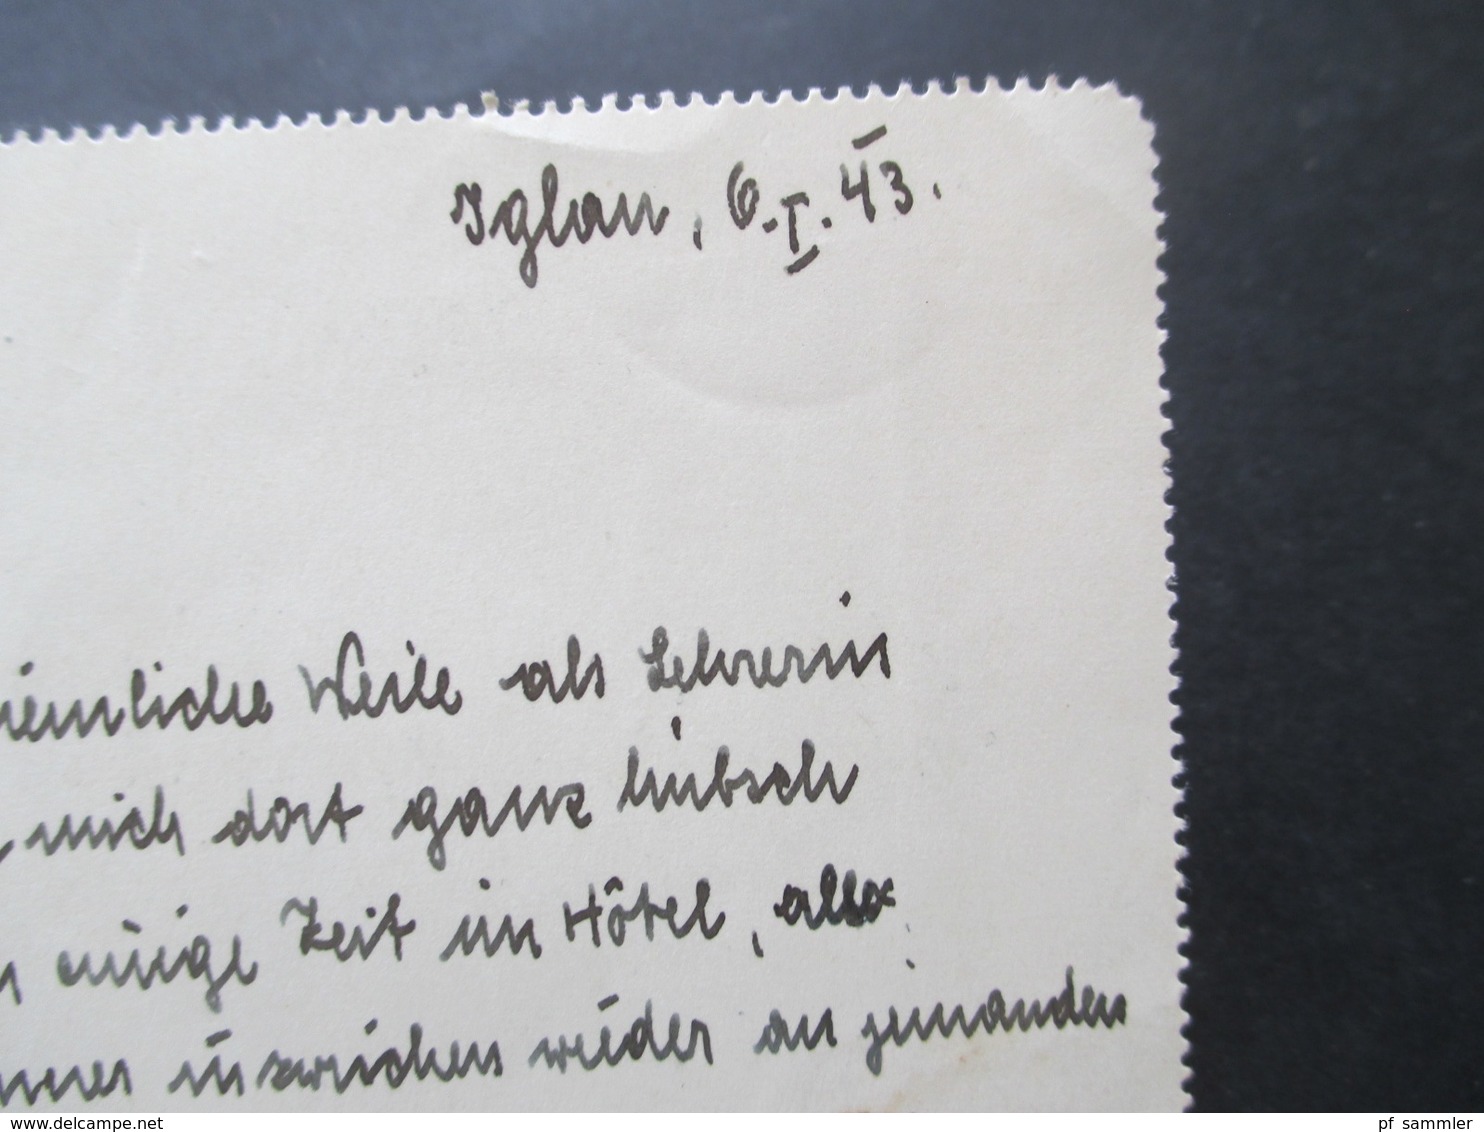 Böhmen und Mähren GA Kartenbrief K 4 aus Iglau nach Berlin Luft Gau Postamt Marke handschriftlich überschrieben Feldpost